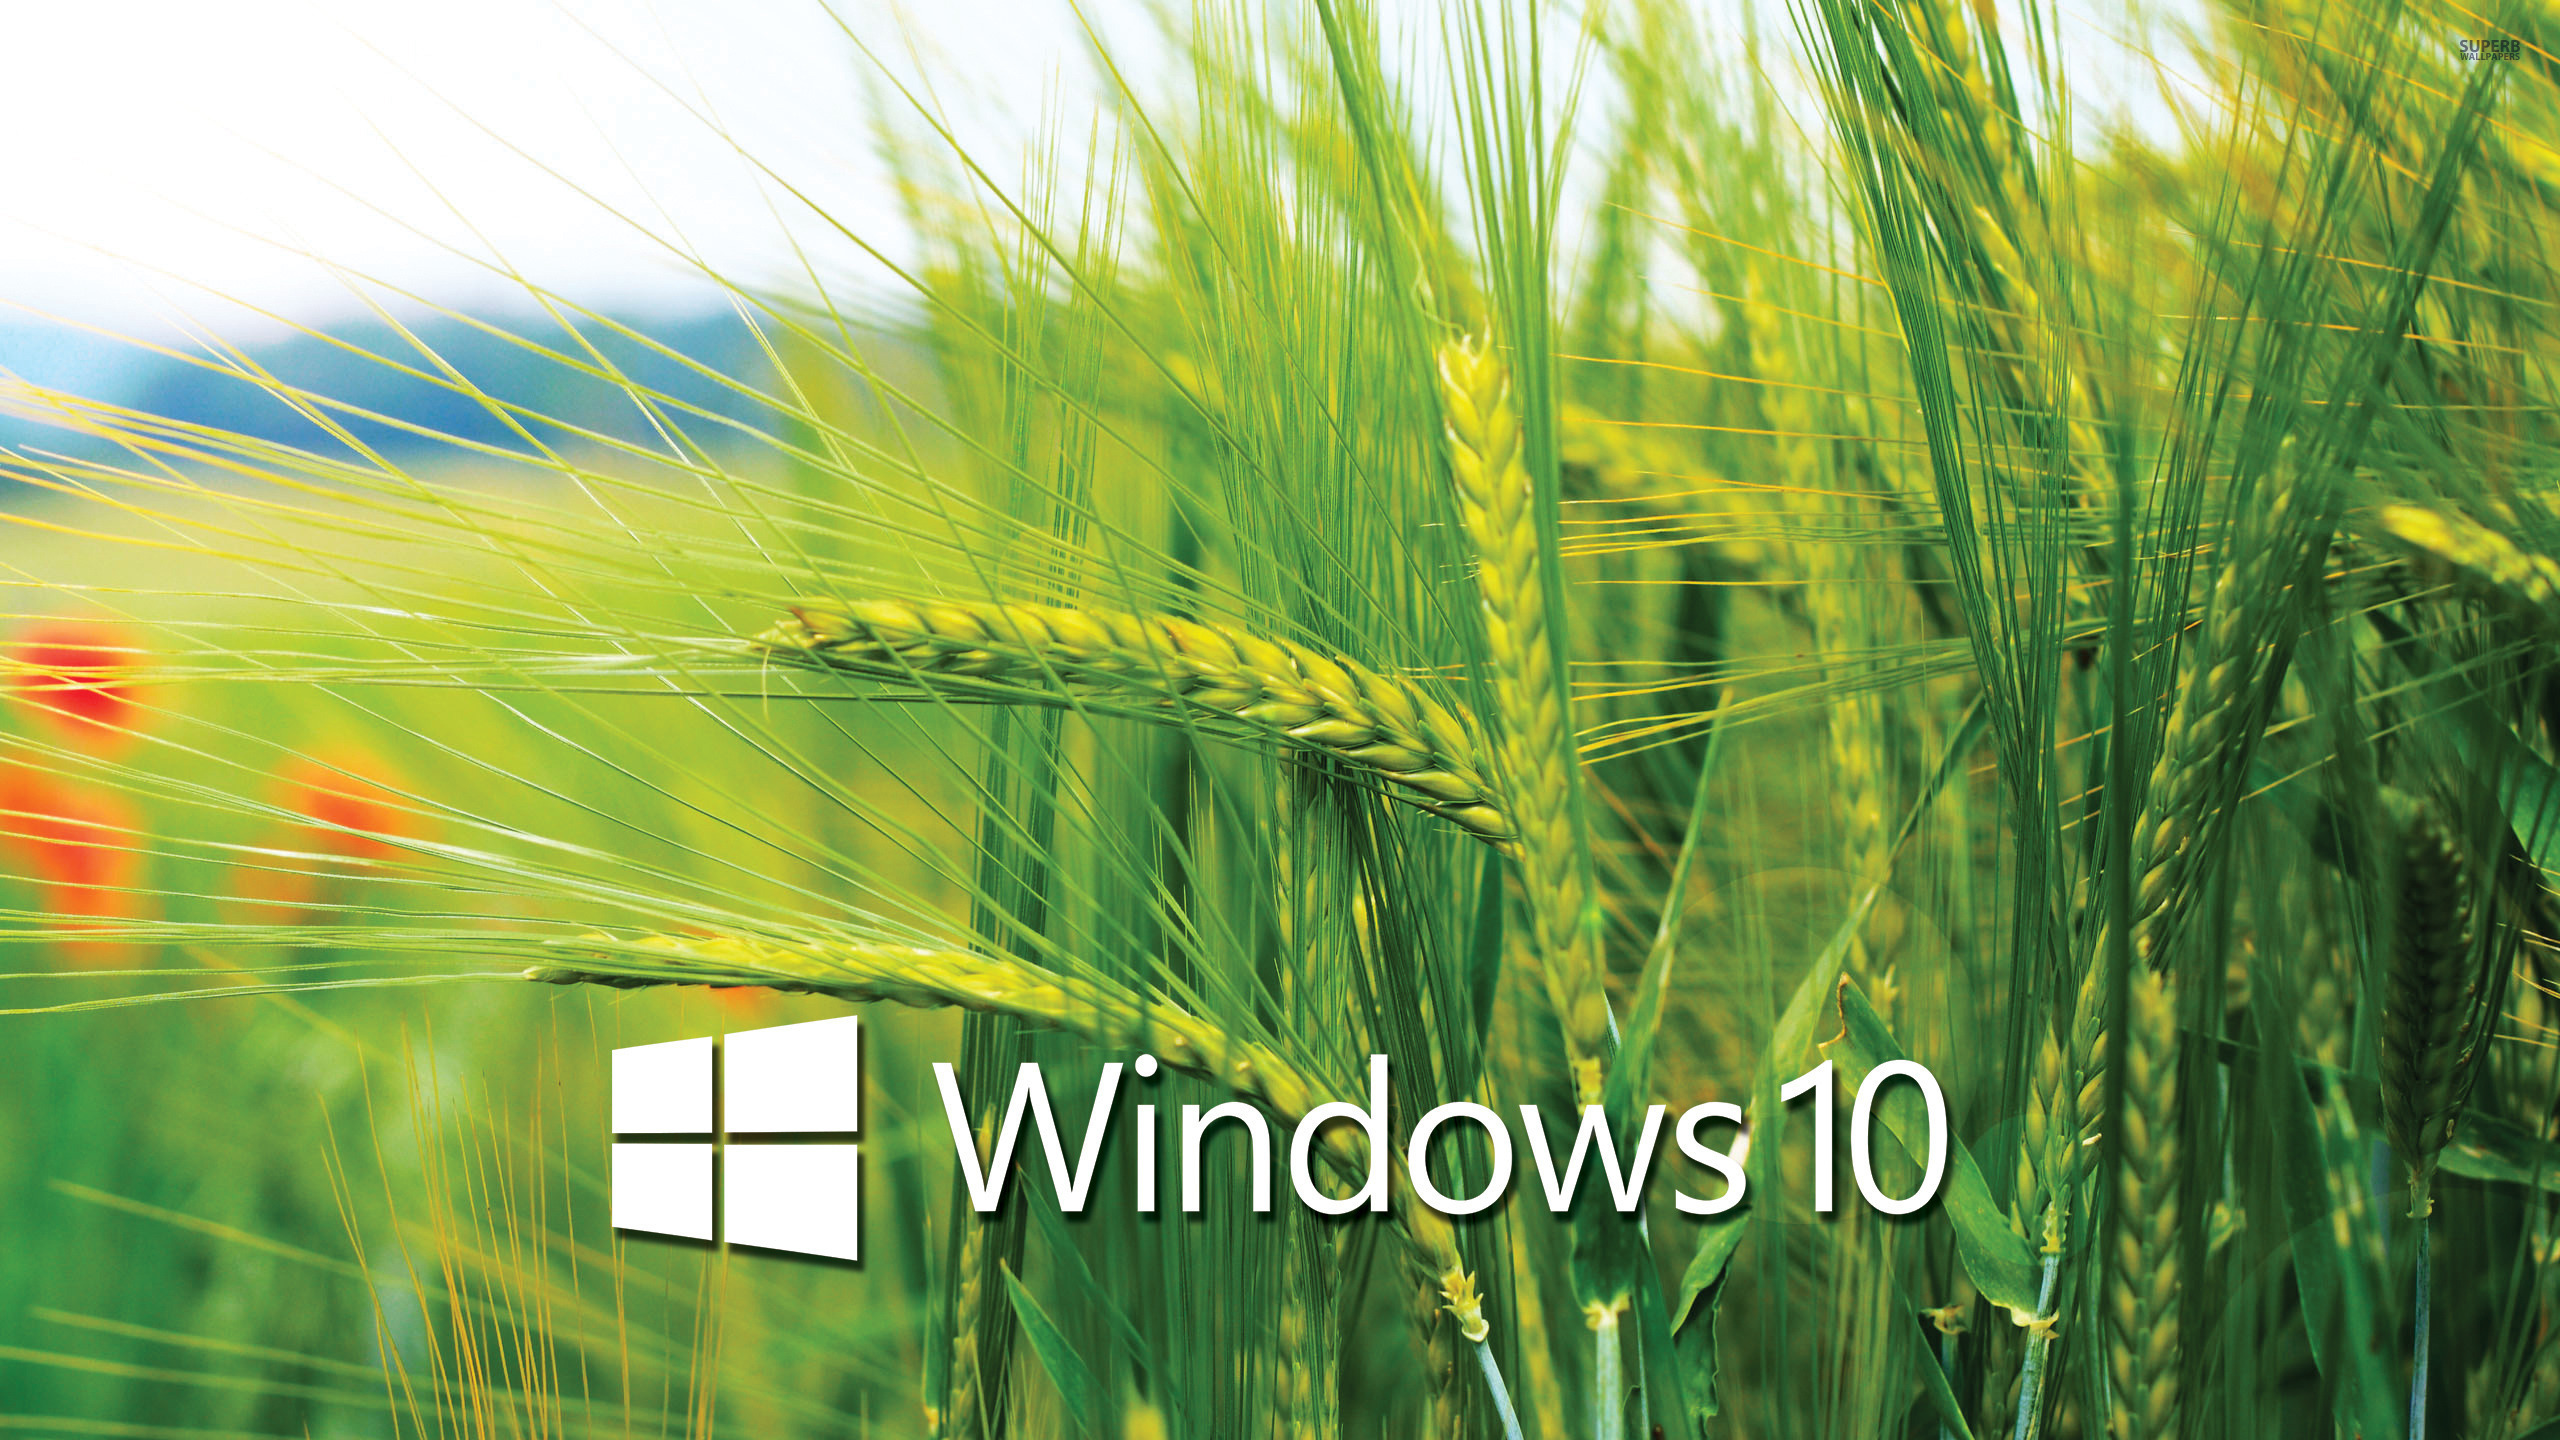 Bạn đang tìm kiếm một hình nền xinh đẹp cho Windows 10 của mình? Không cần phải lo lắng vì bạn có thể tải miễn phí những hình nền HD đẹp mắt mà không tốn kém. Hãy đến với chúng tôi để khám phá thêm nhiều tùy chọn hình nền độc đáo cho máy tính của bạn.